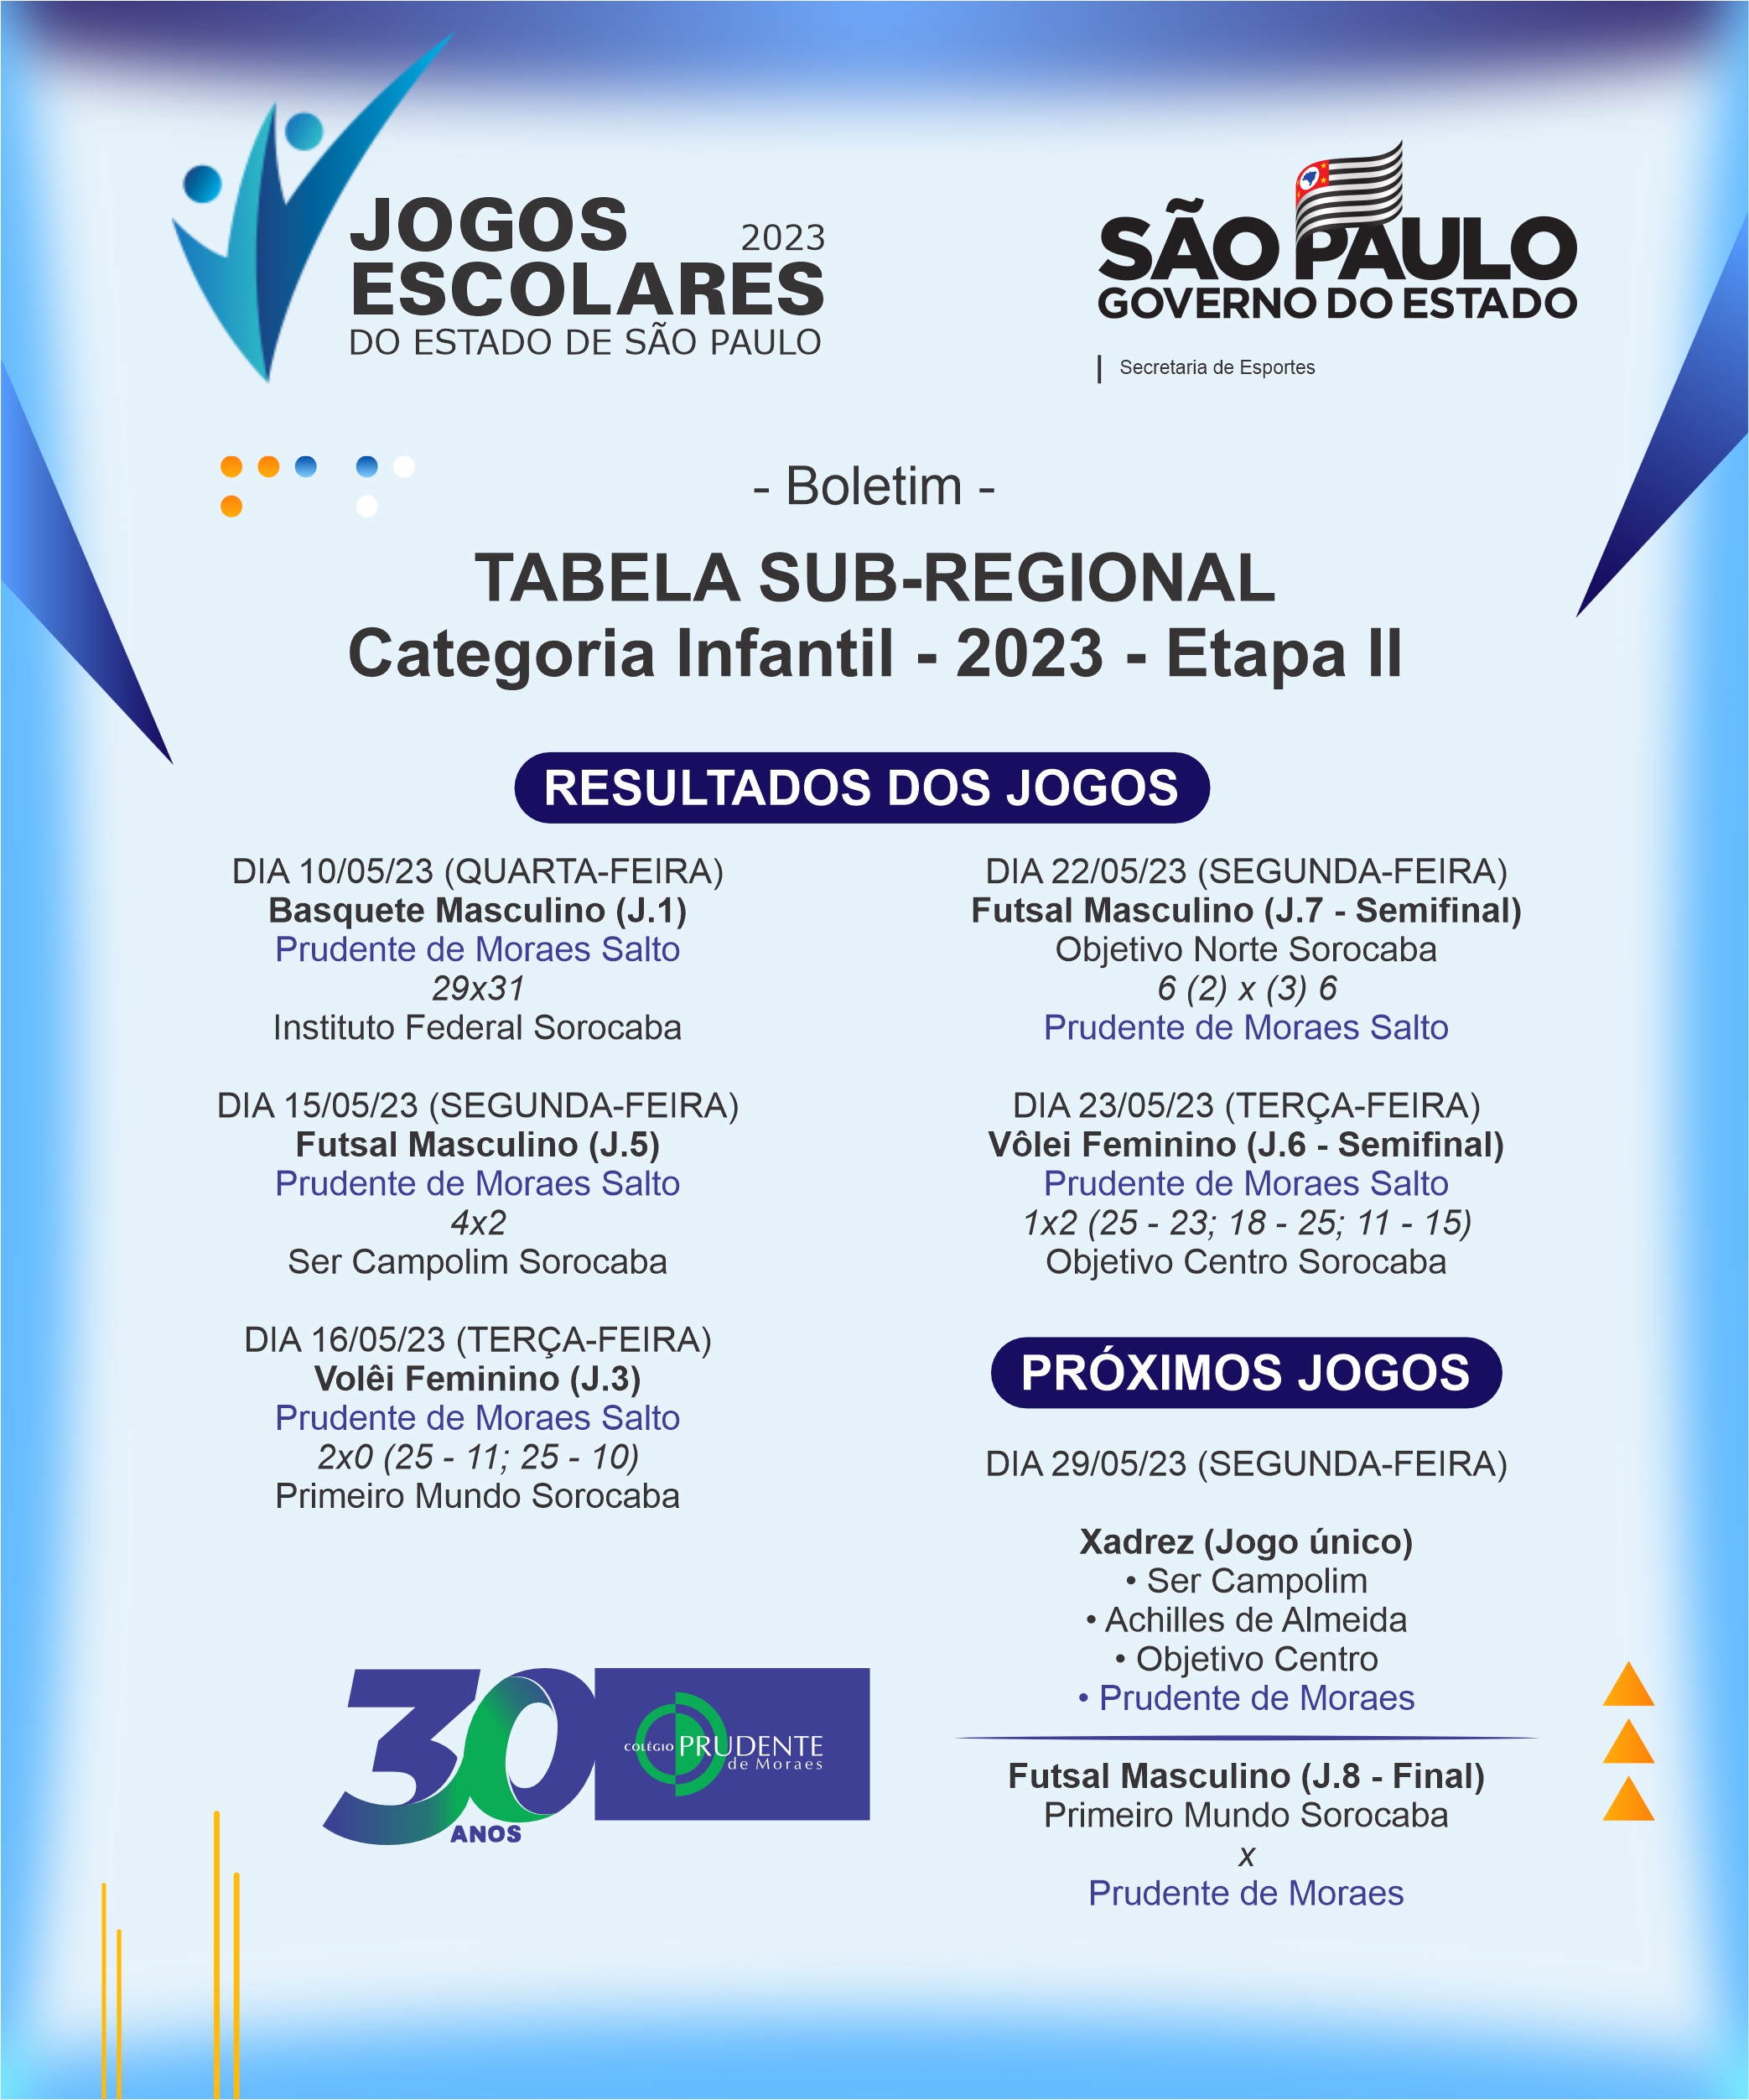 JOGOS POPULARES :: C. E. Prudente de Moraes